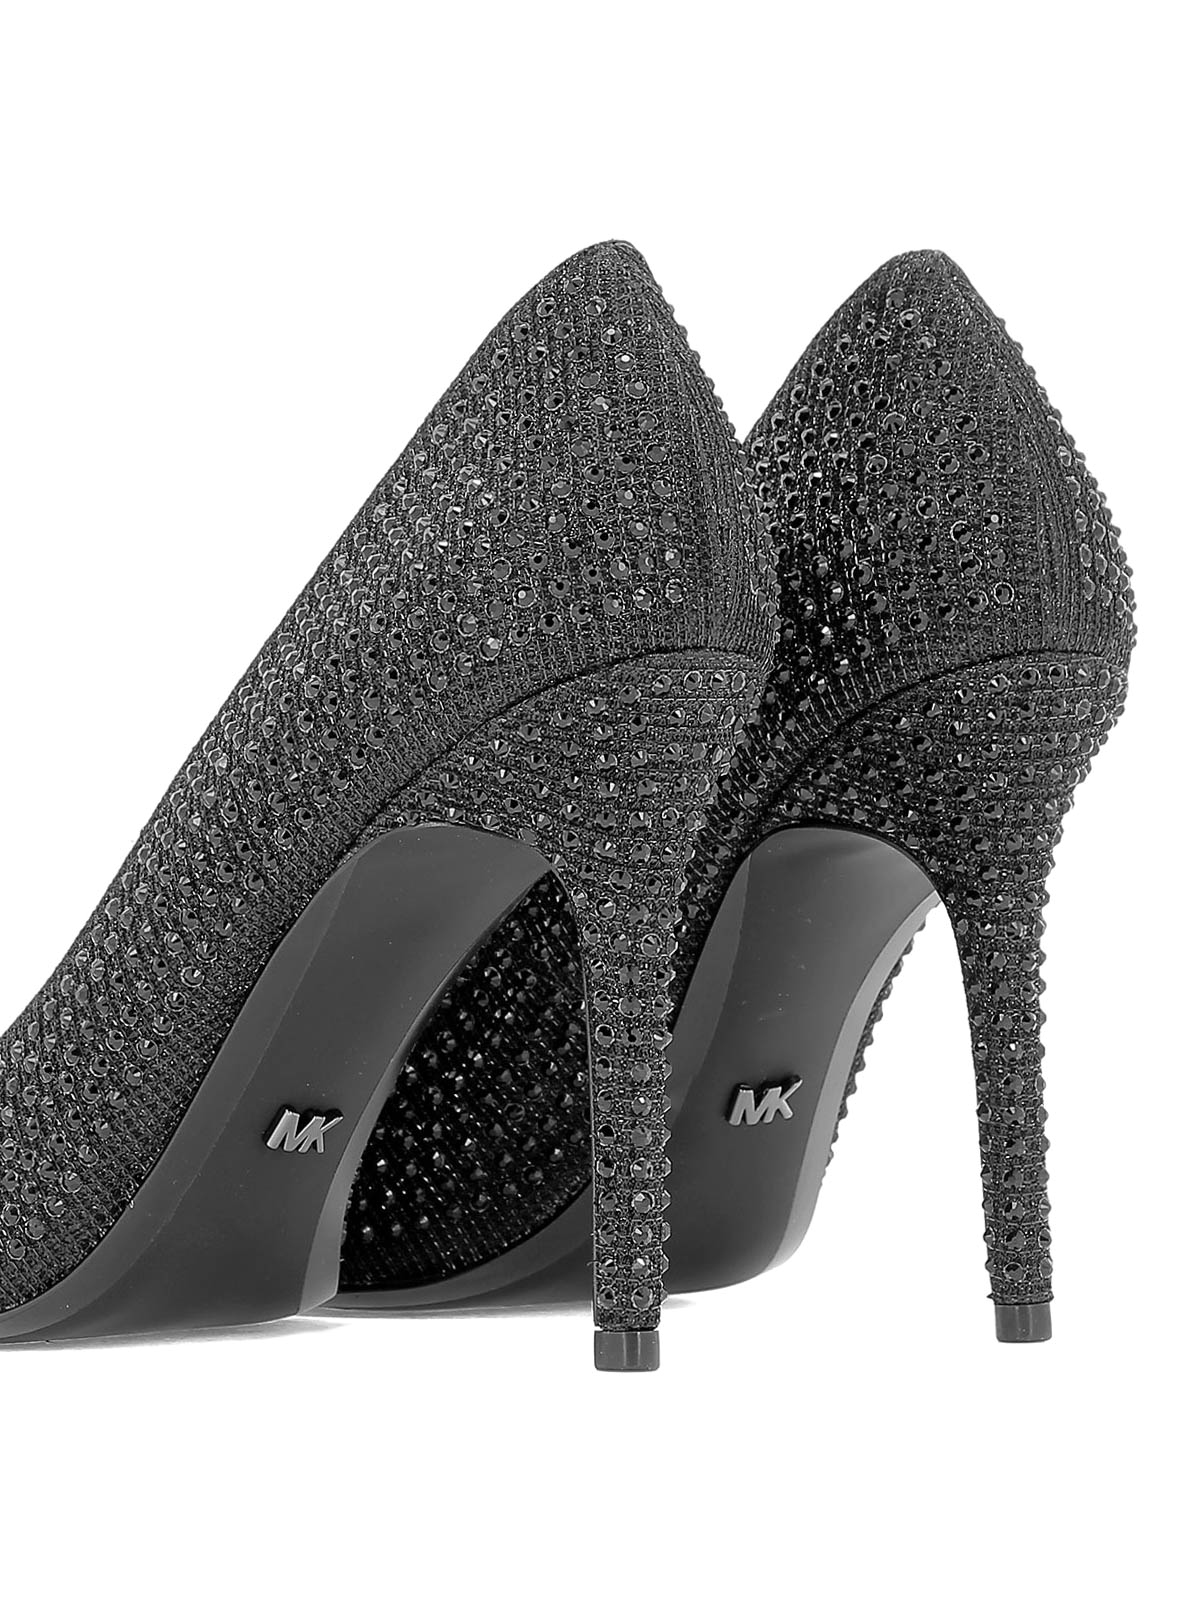 Court shoes Michael Kors - Claire black rhinestone pumps - 40R9CLHP1D958